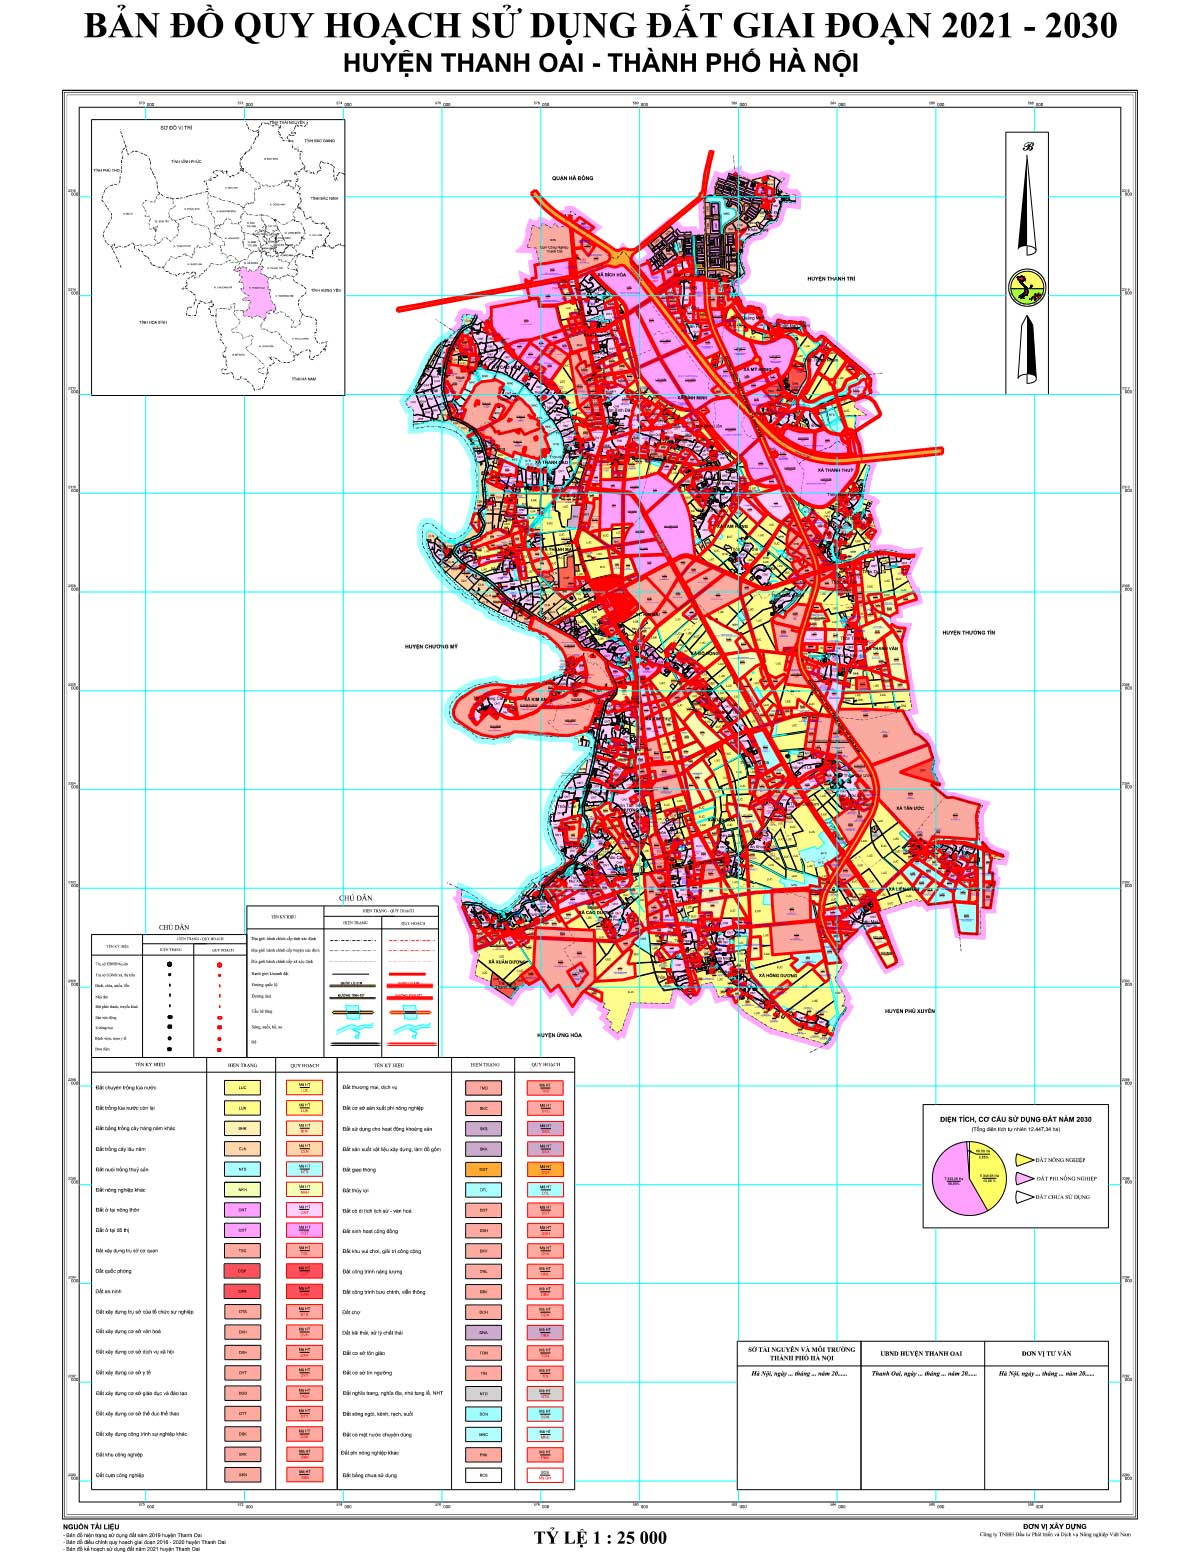 Bản đồ QHSDĐ huyện Thanh Oai đến năm 2030